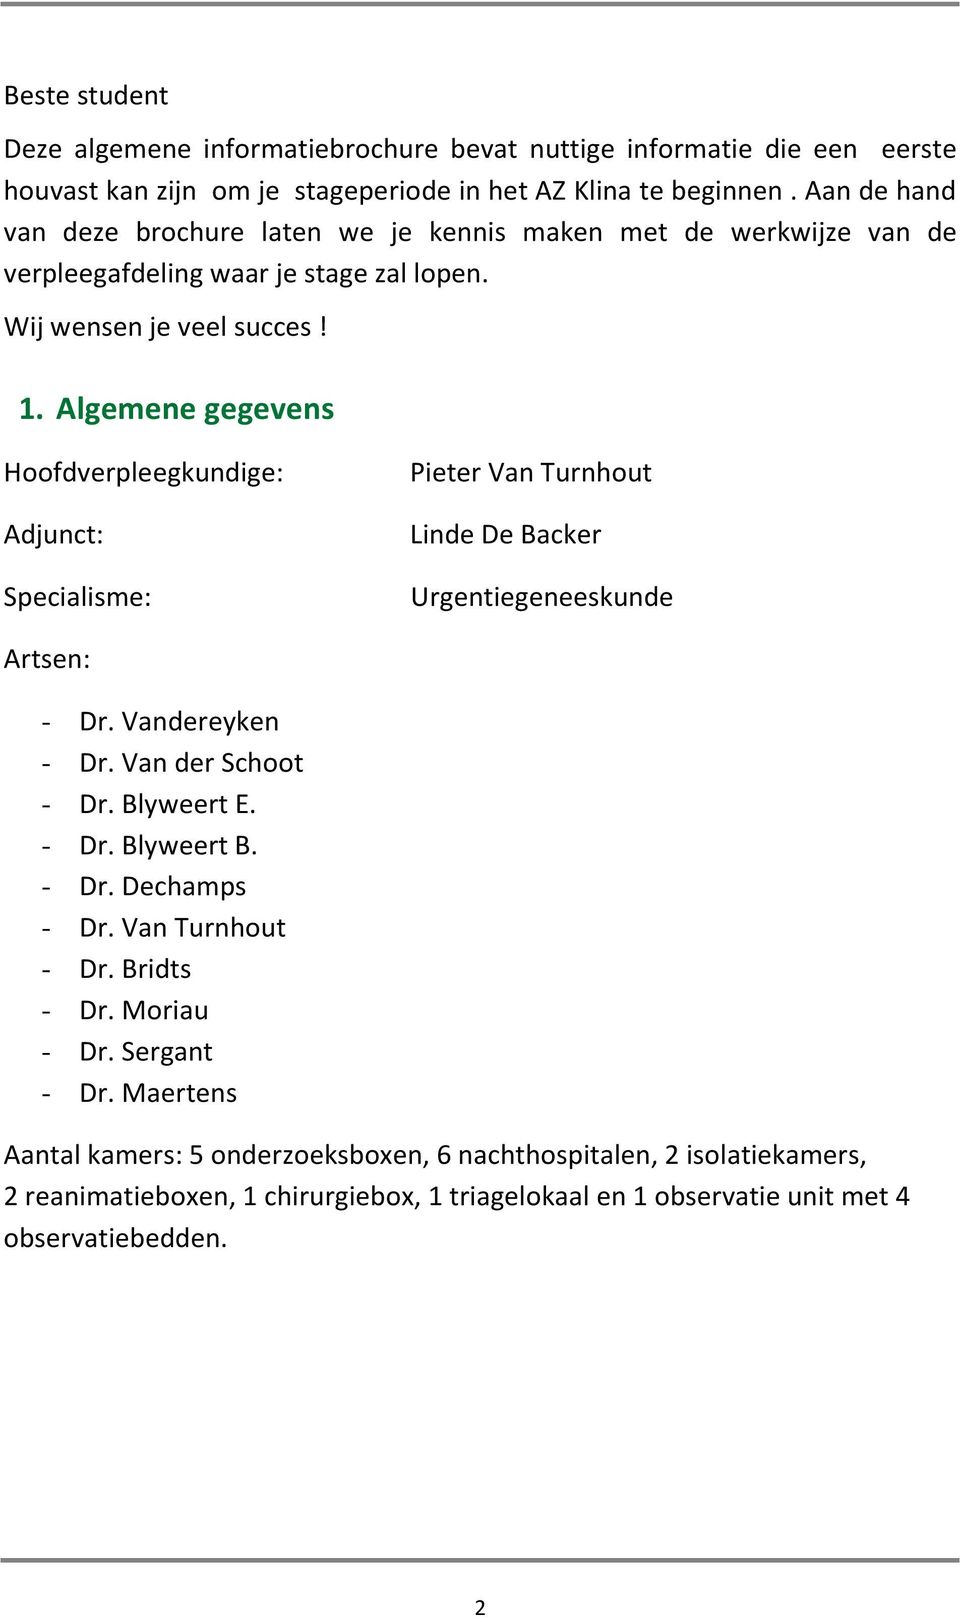 Algemene gegevens Hoofdverpleegkundige: Adjunct: Specialisme: Pieter Van Turnhout Linde De Backer Urgentiegeneeskunde Artsen: - Dr. Vandereyken - Dr. Van der Schoot - Dr. Blyweert E. - Dr. Blyweert B.